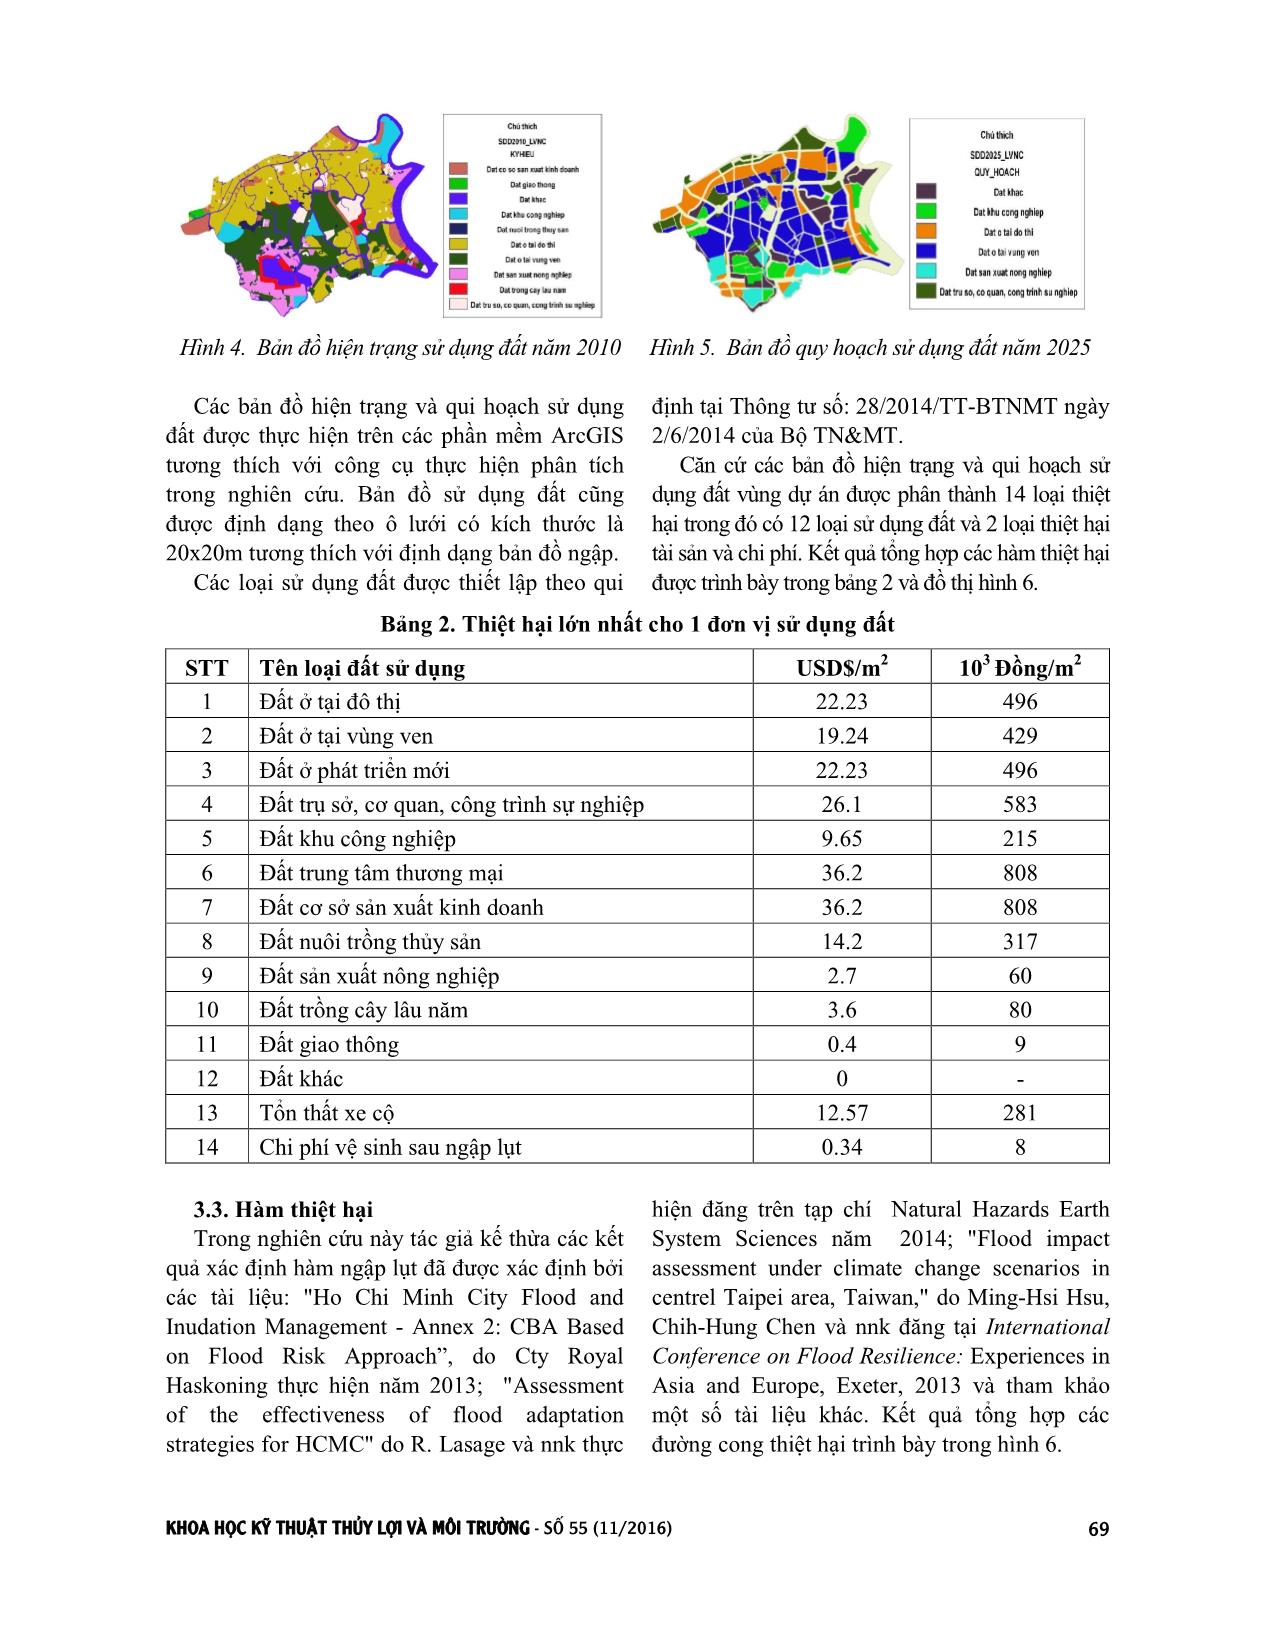 Đánh giá rủi ro kinh tế do ngập lụt, ứng dụng cho dự án chống ngập khu vực thành phố Hồ Chí Minh giai đoạn 1 trang 5